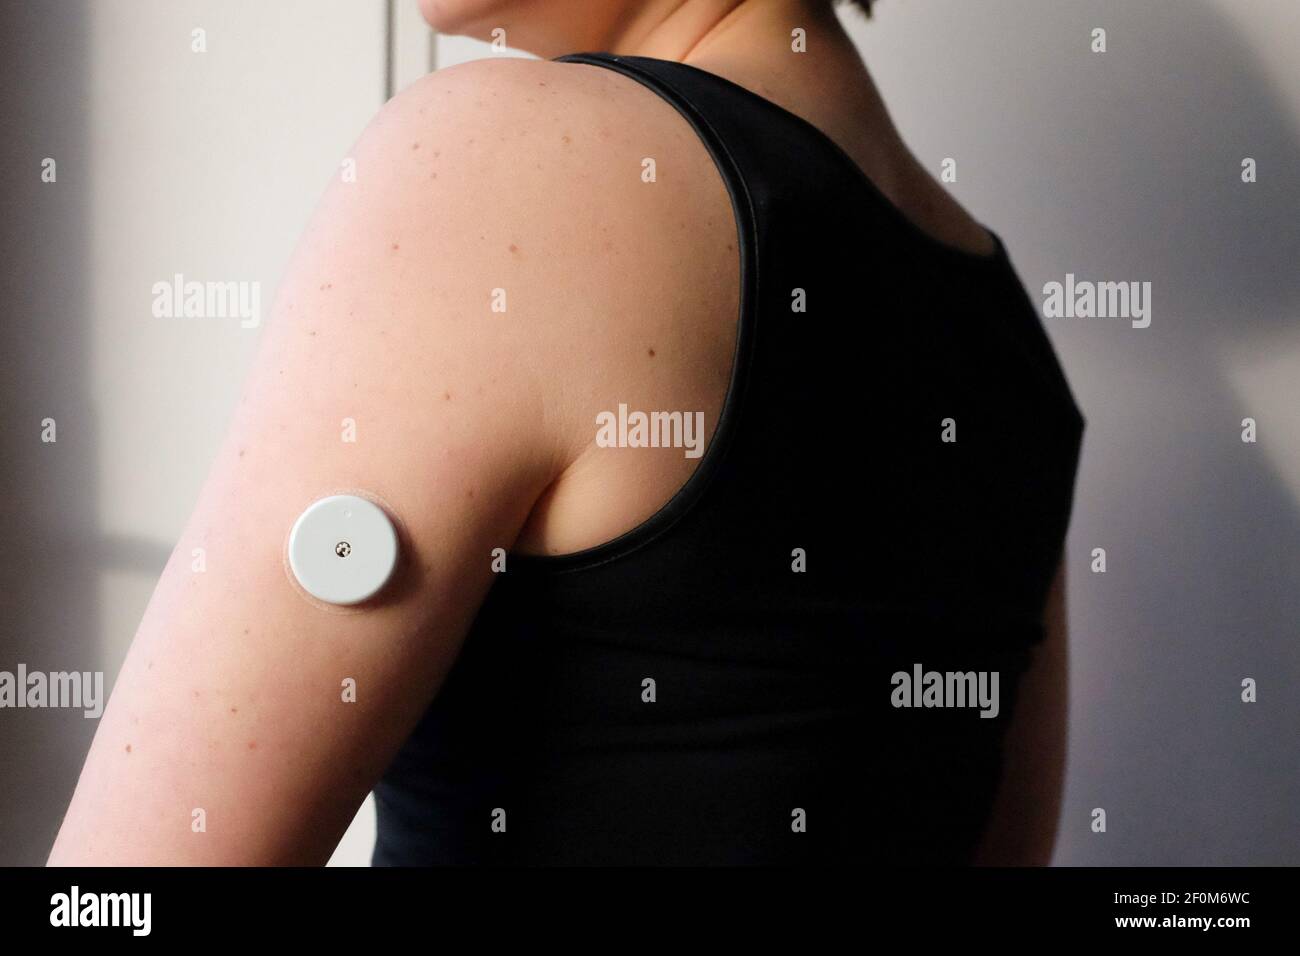 Eine Frau trägt einen Freestyle Libre Flash Glukosesensor. Das Gerät, das  normalerweise am Oberarm getragen wird, hilft Menschen mit Typ-1-Diabetes,  ihren Blutzuckerspiegel zu überwachen. Jeder Sensor hält 14 Tage und kostet  etwa £